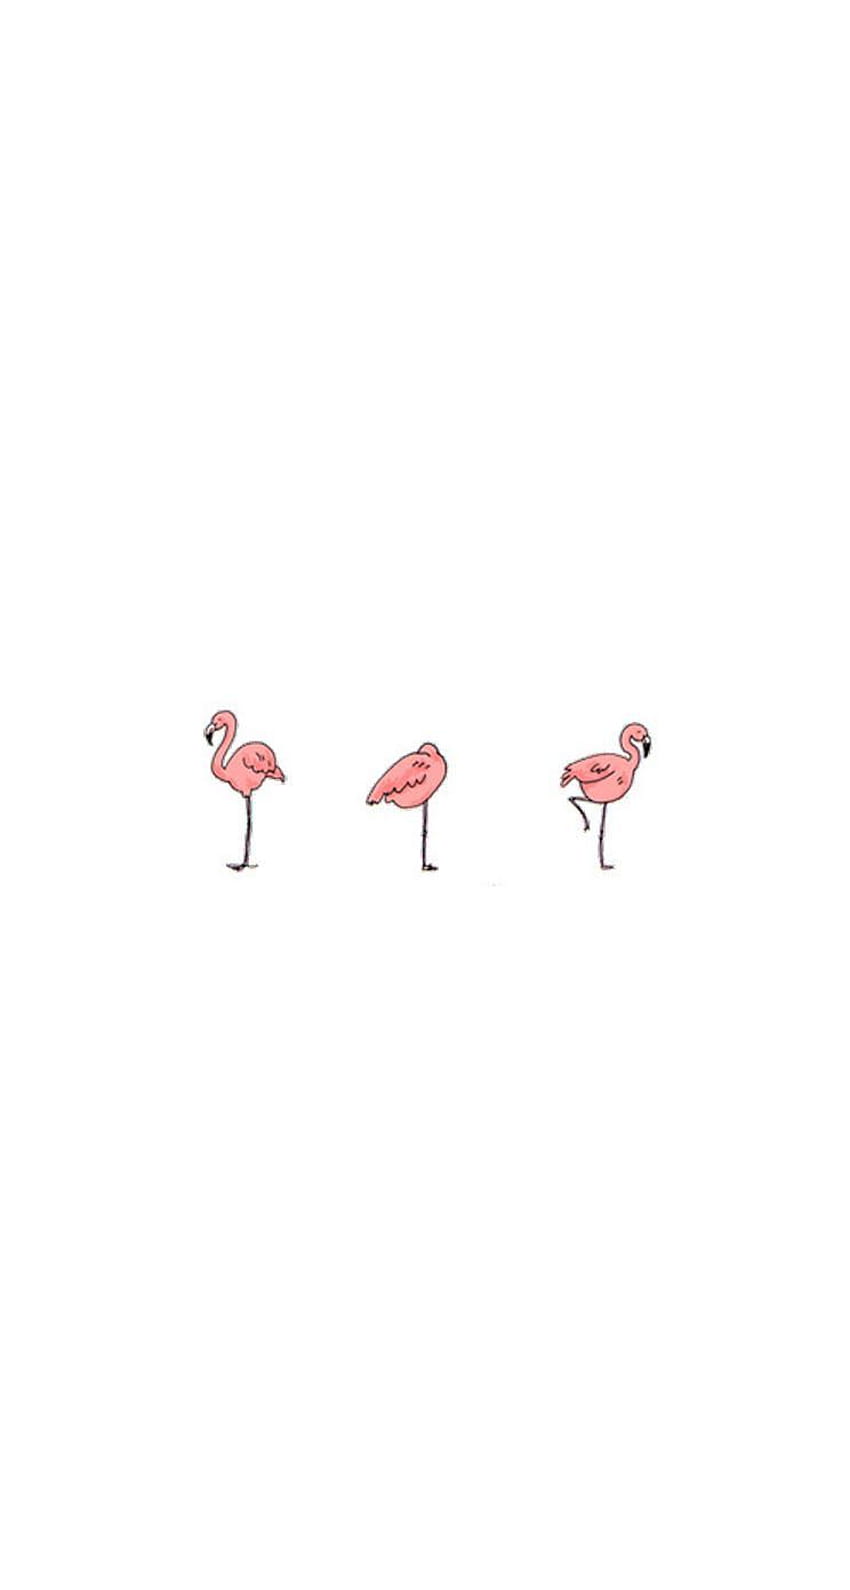 Three flamingos on a white background - Flamingo